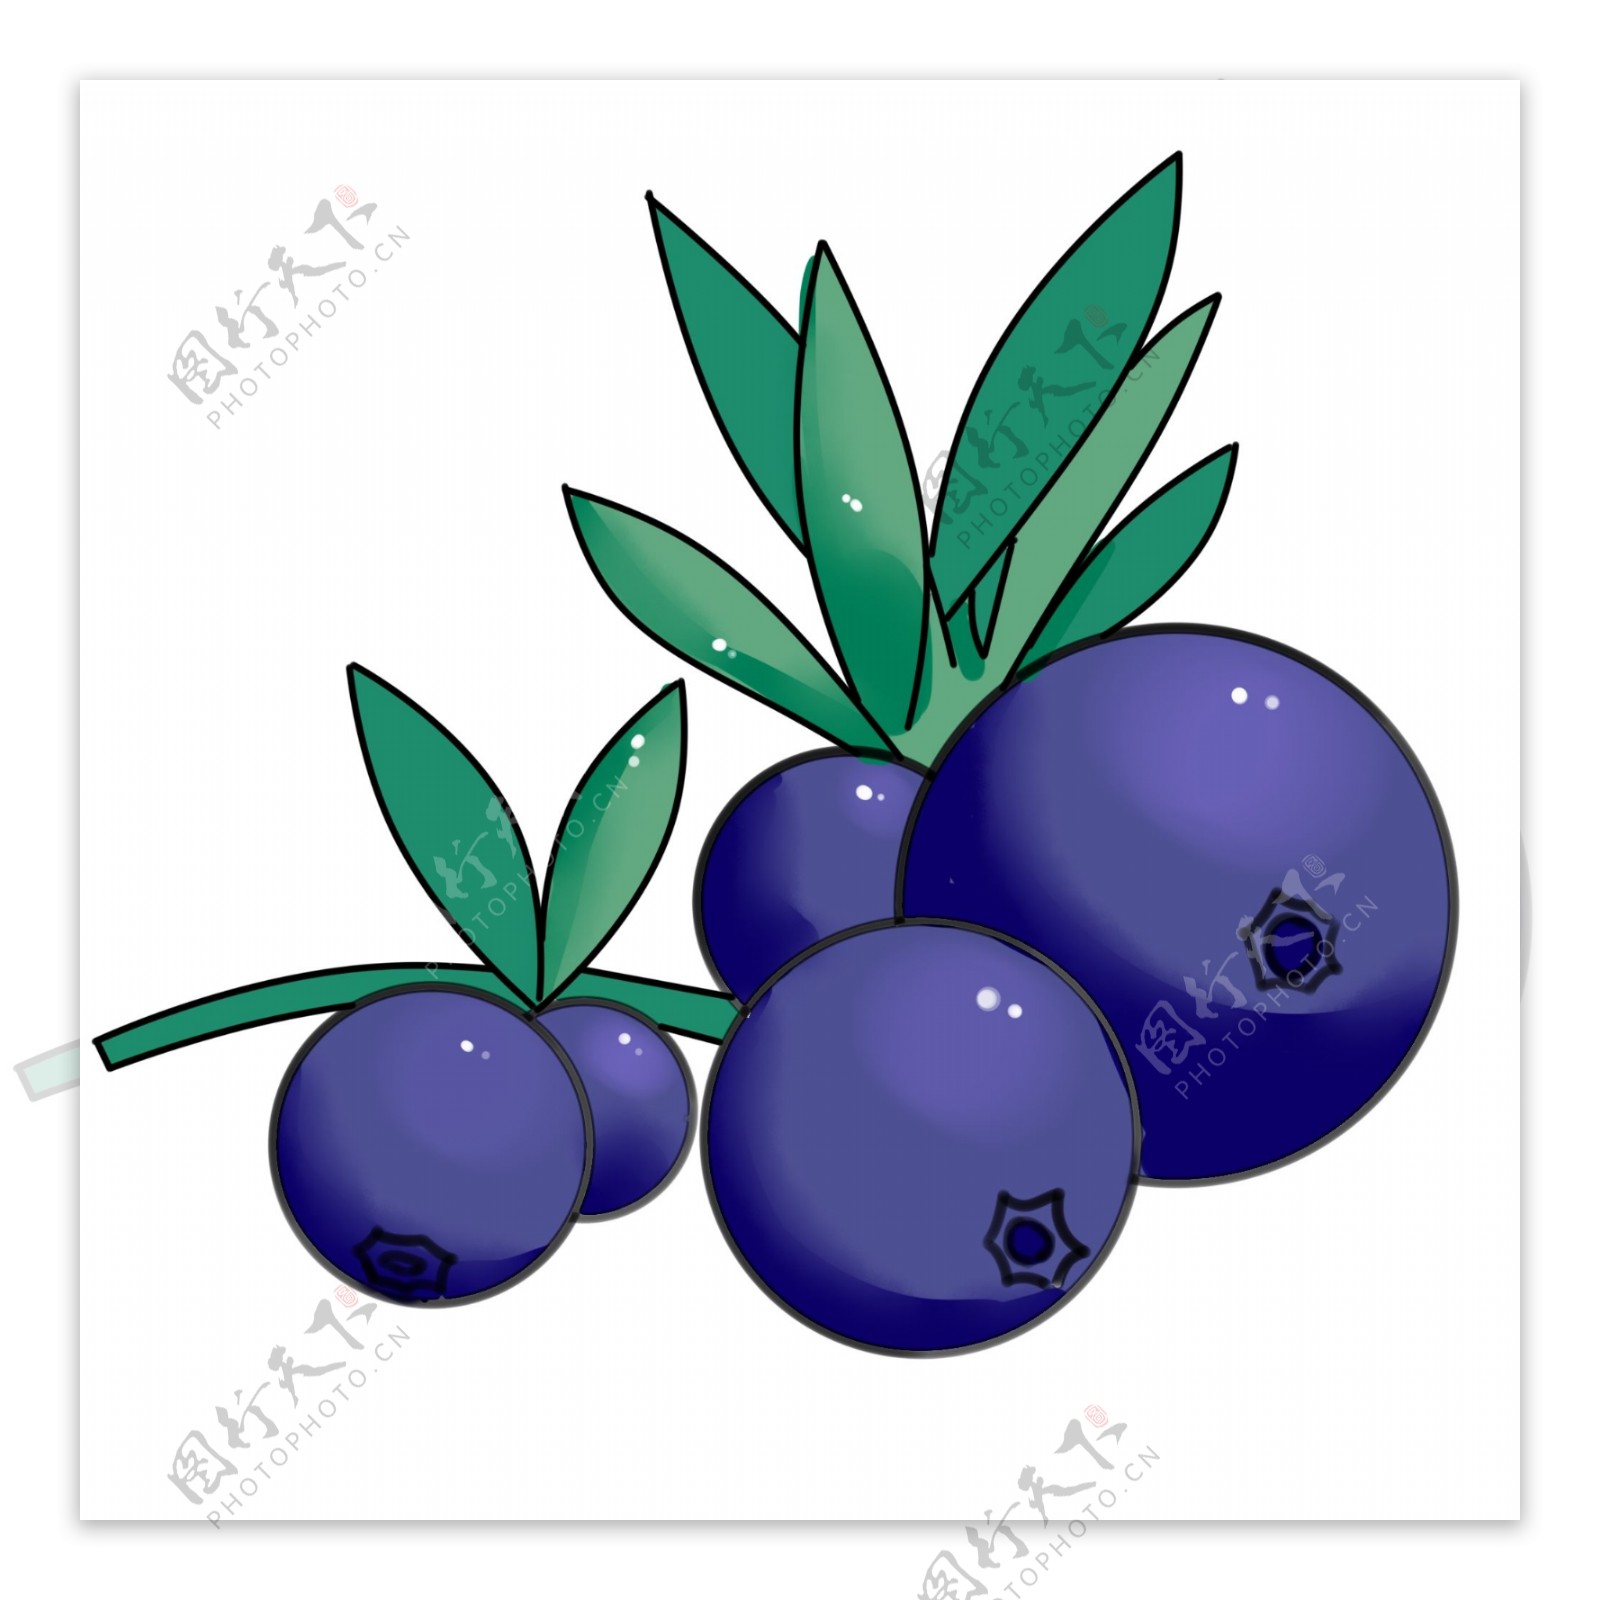 一串新鲜采摘的蓝莓